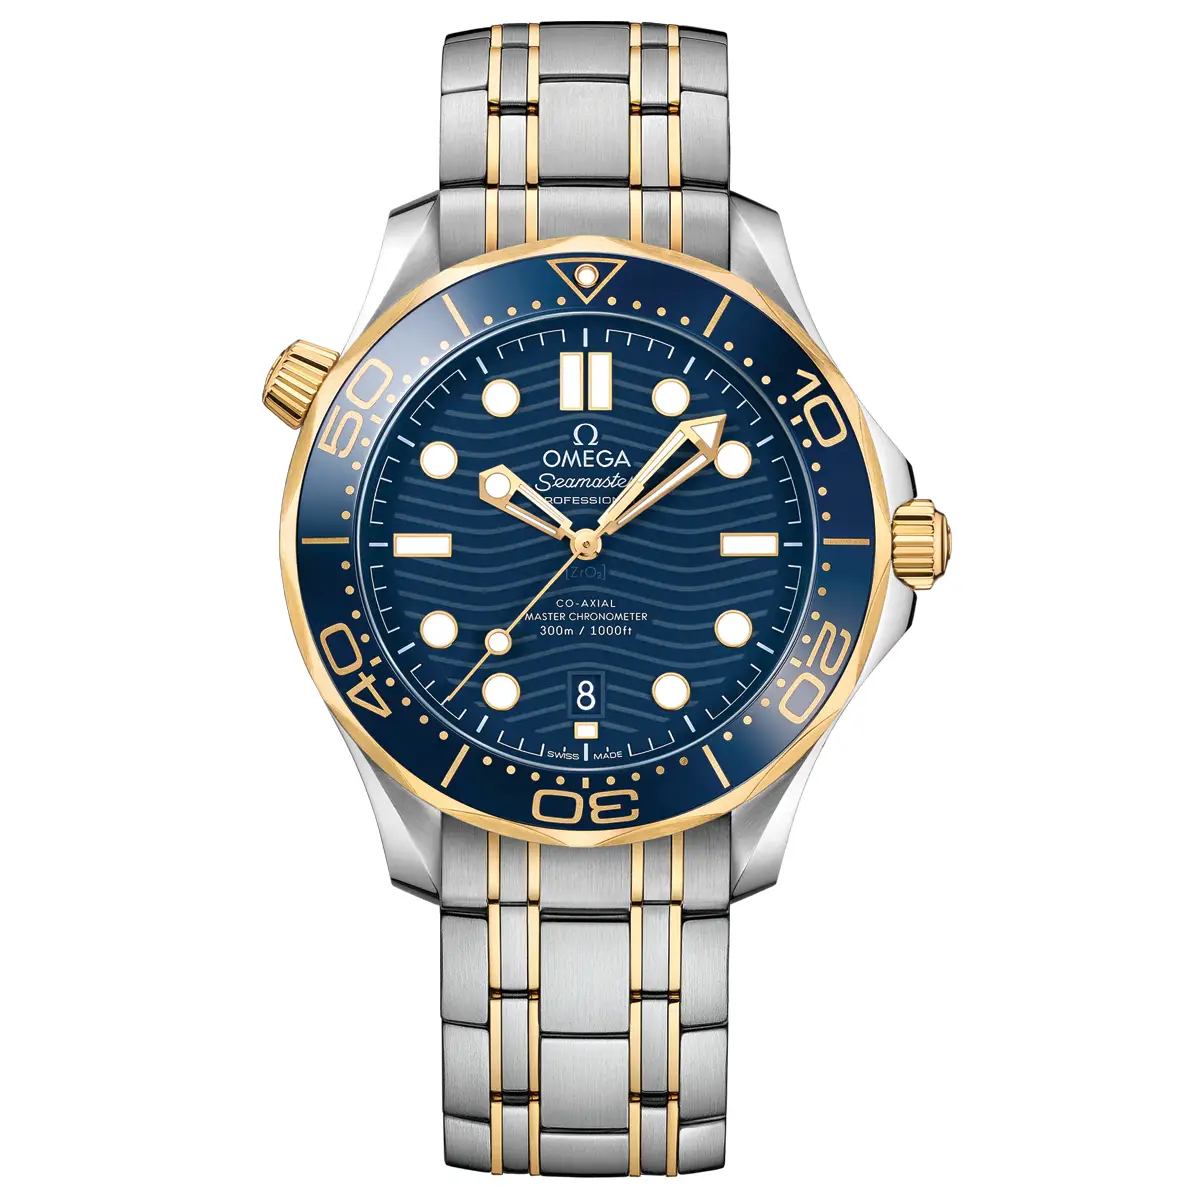 Đồng hồ Omega Seamaster Diver Master Chronometer 210.20.42.20.03.001 với mặt số màu xanh. Dây đeo bằng thép. Thân vỏ bằng thép.